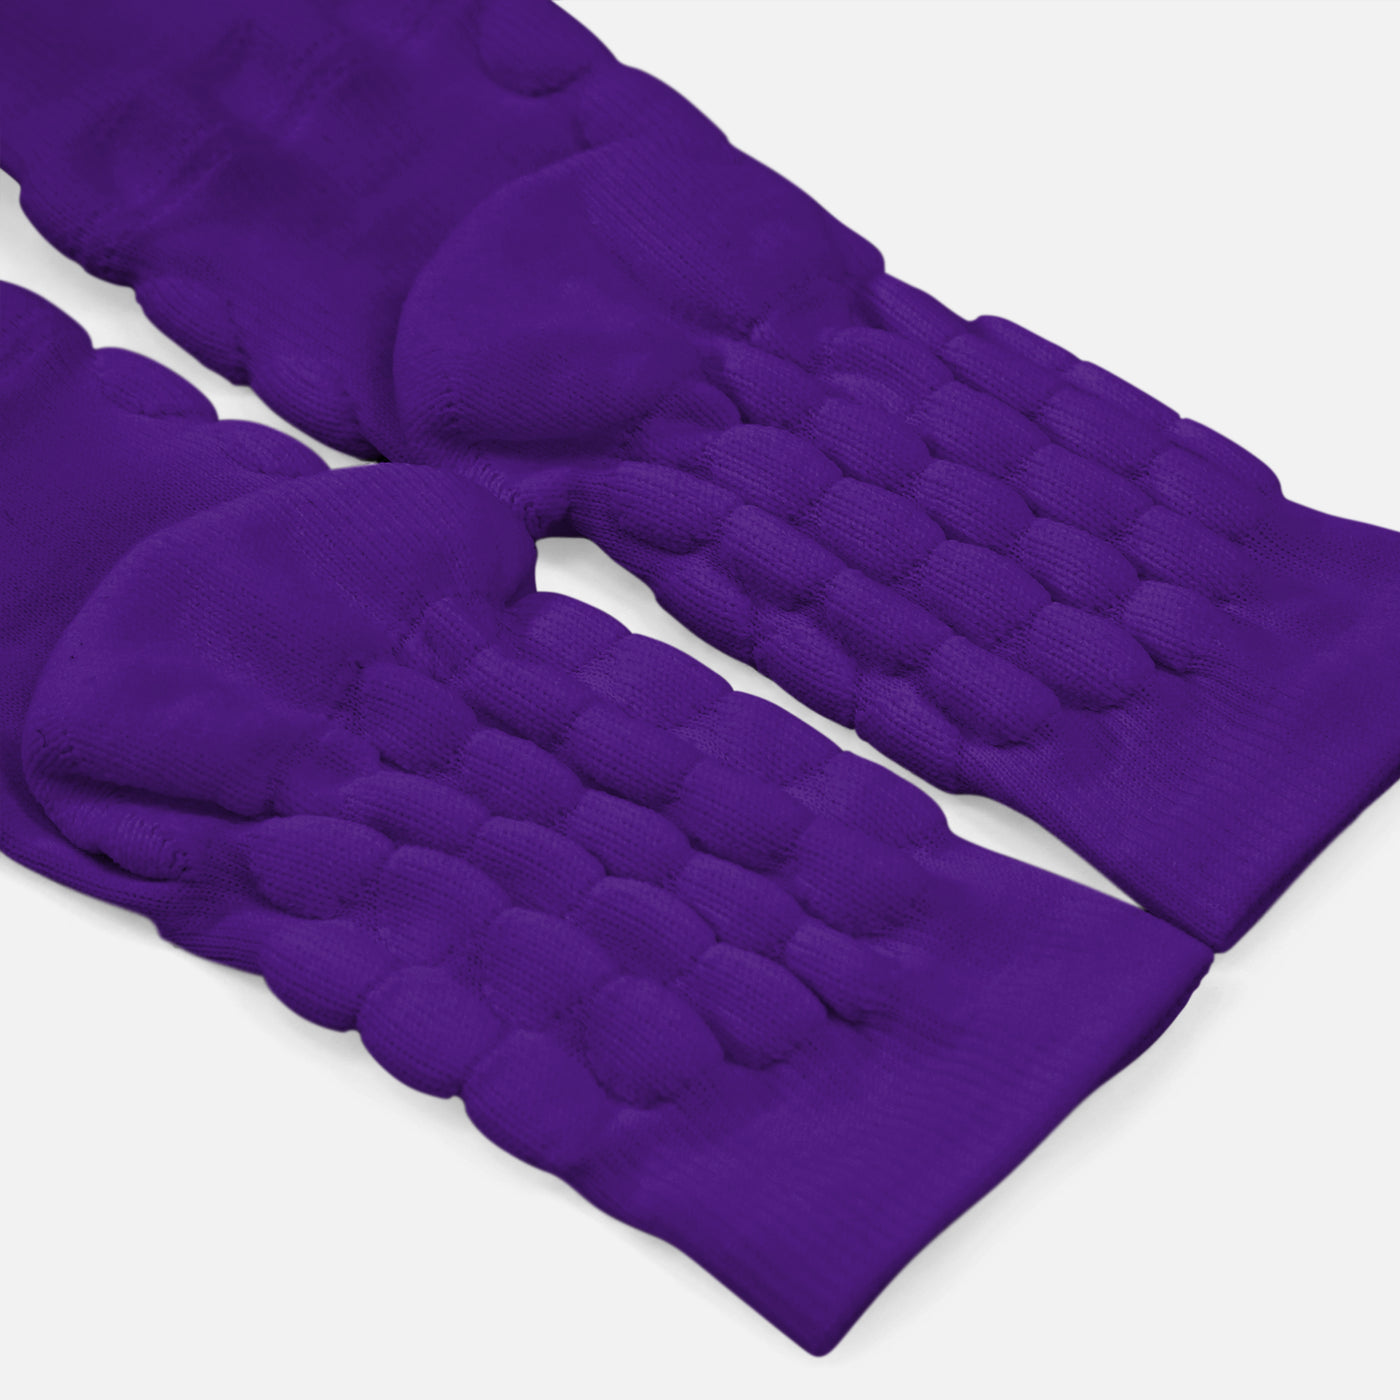 Hue Purple Football Padded Short Socks